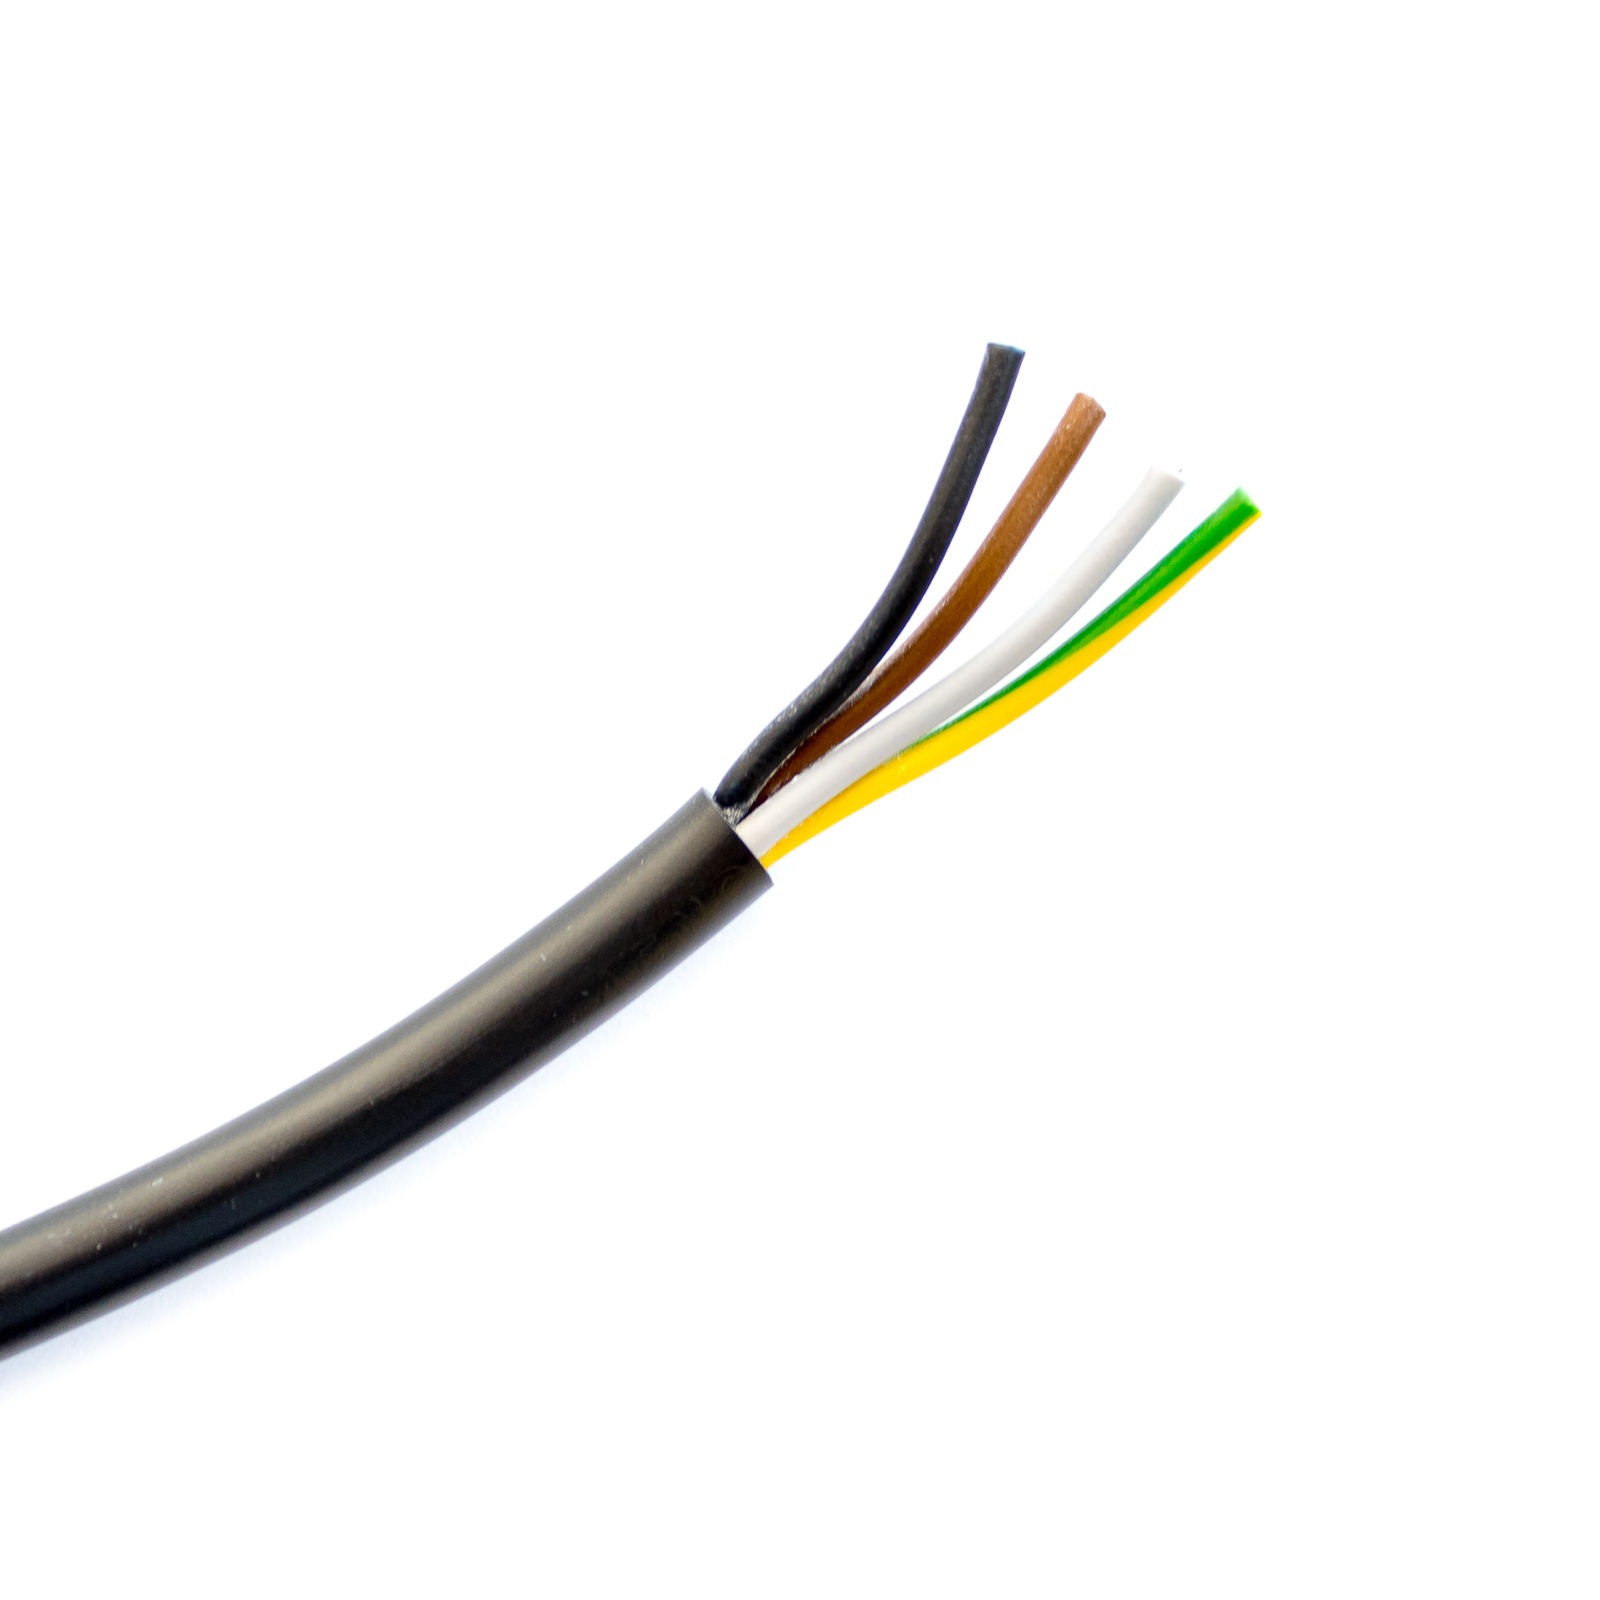 Cable manguera 4 hilos de 1mm